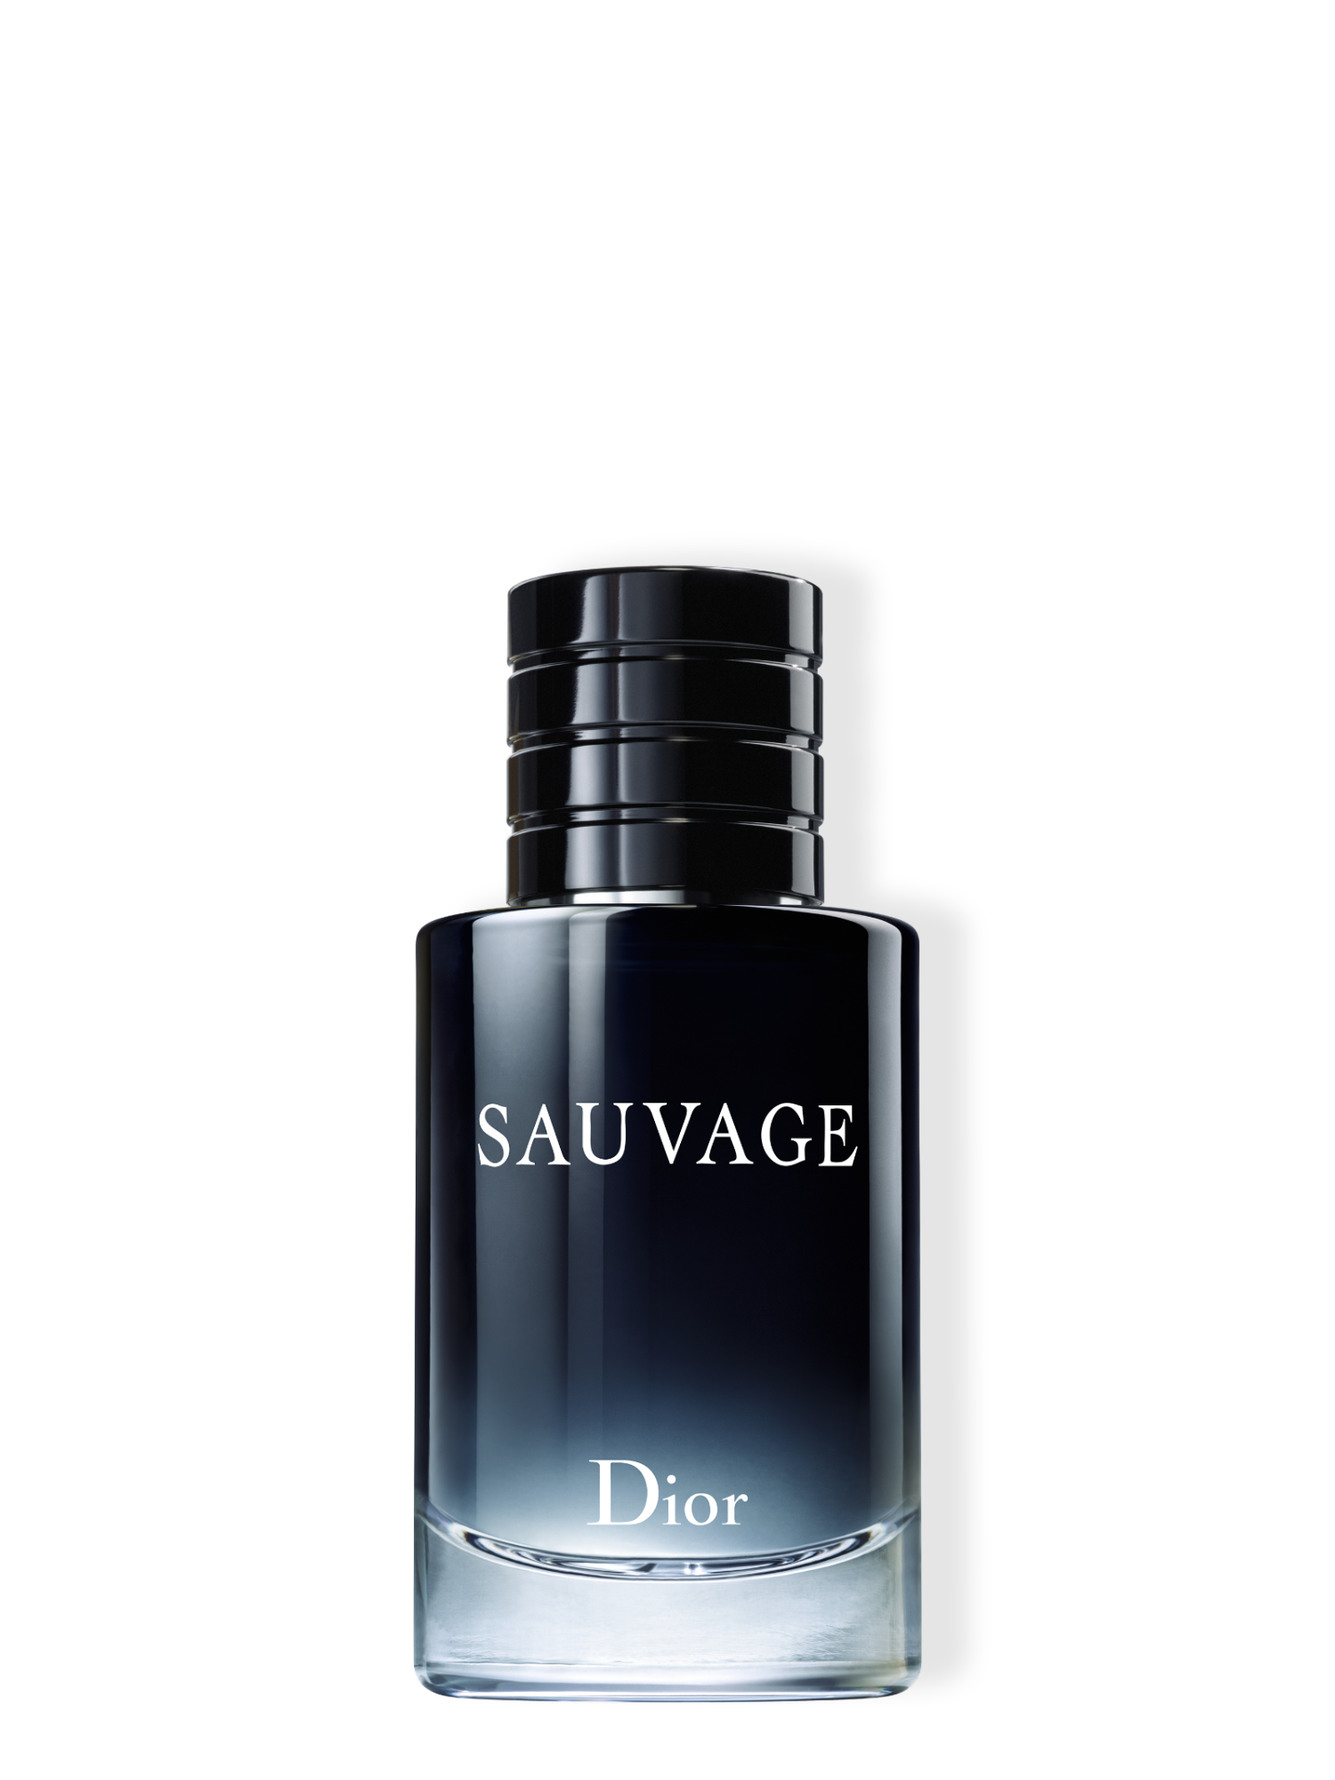 Dior Sauvage Eau de Toilette 60 ml